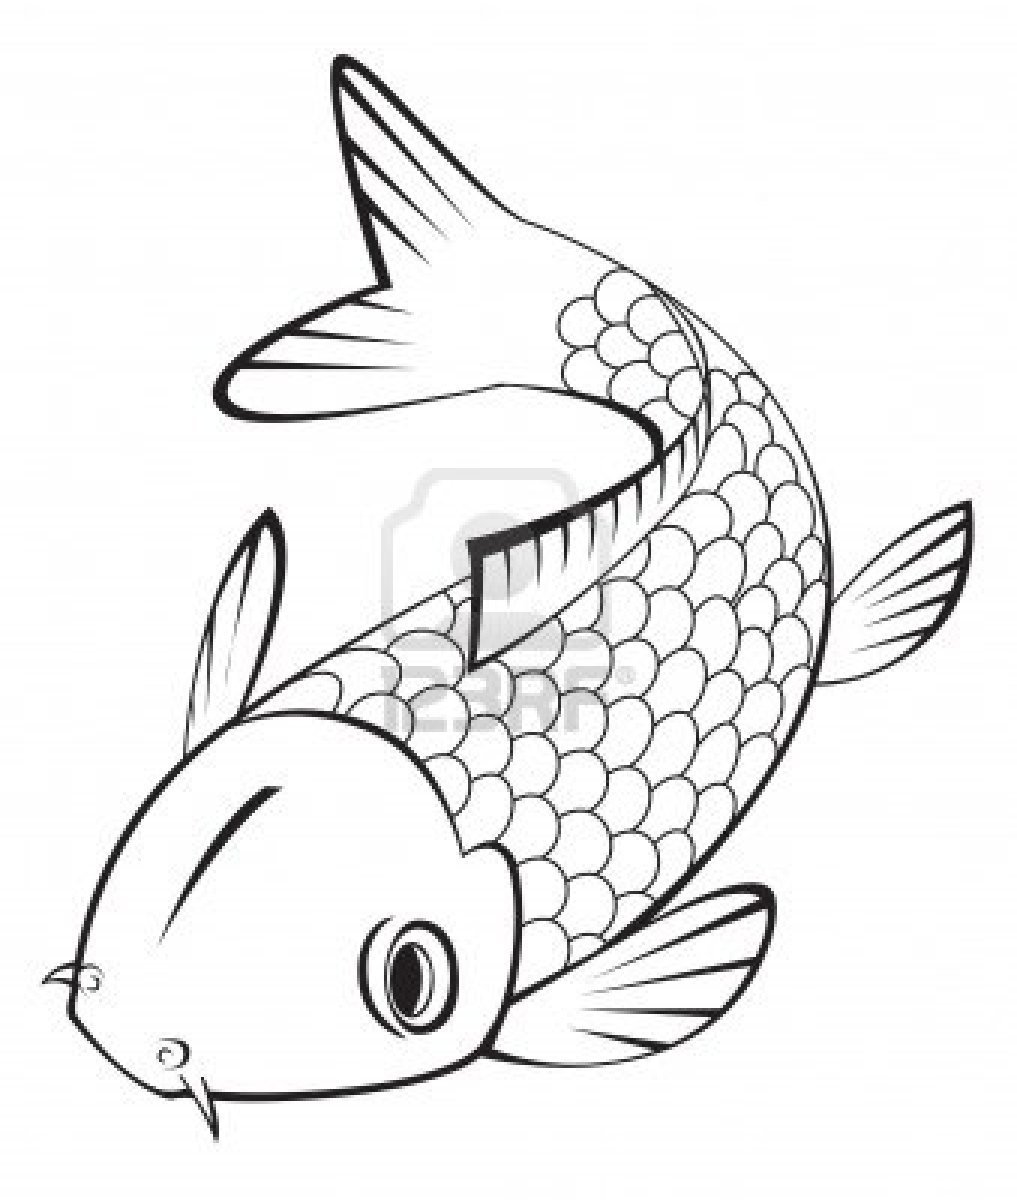 Japanese Fish Drawing